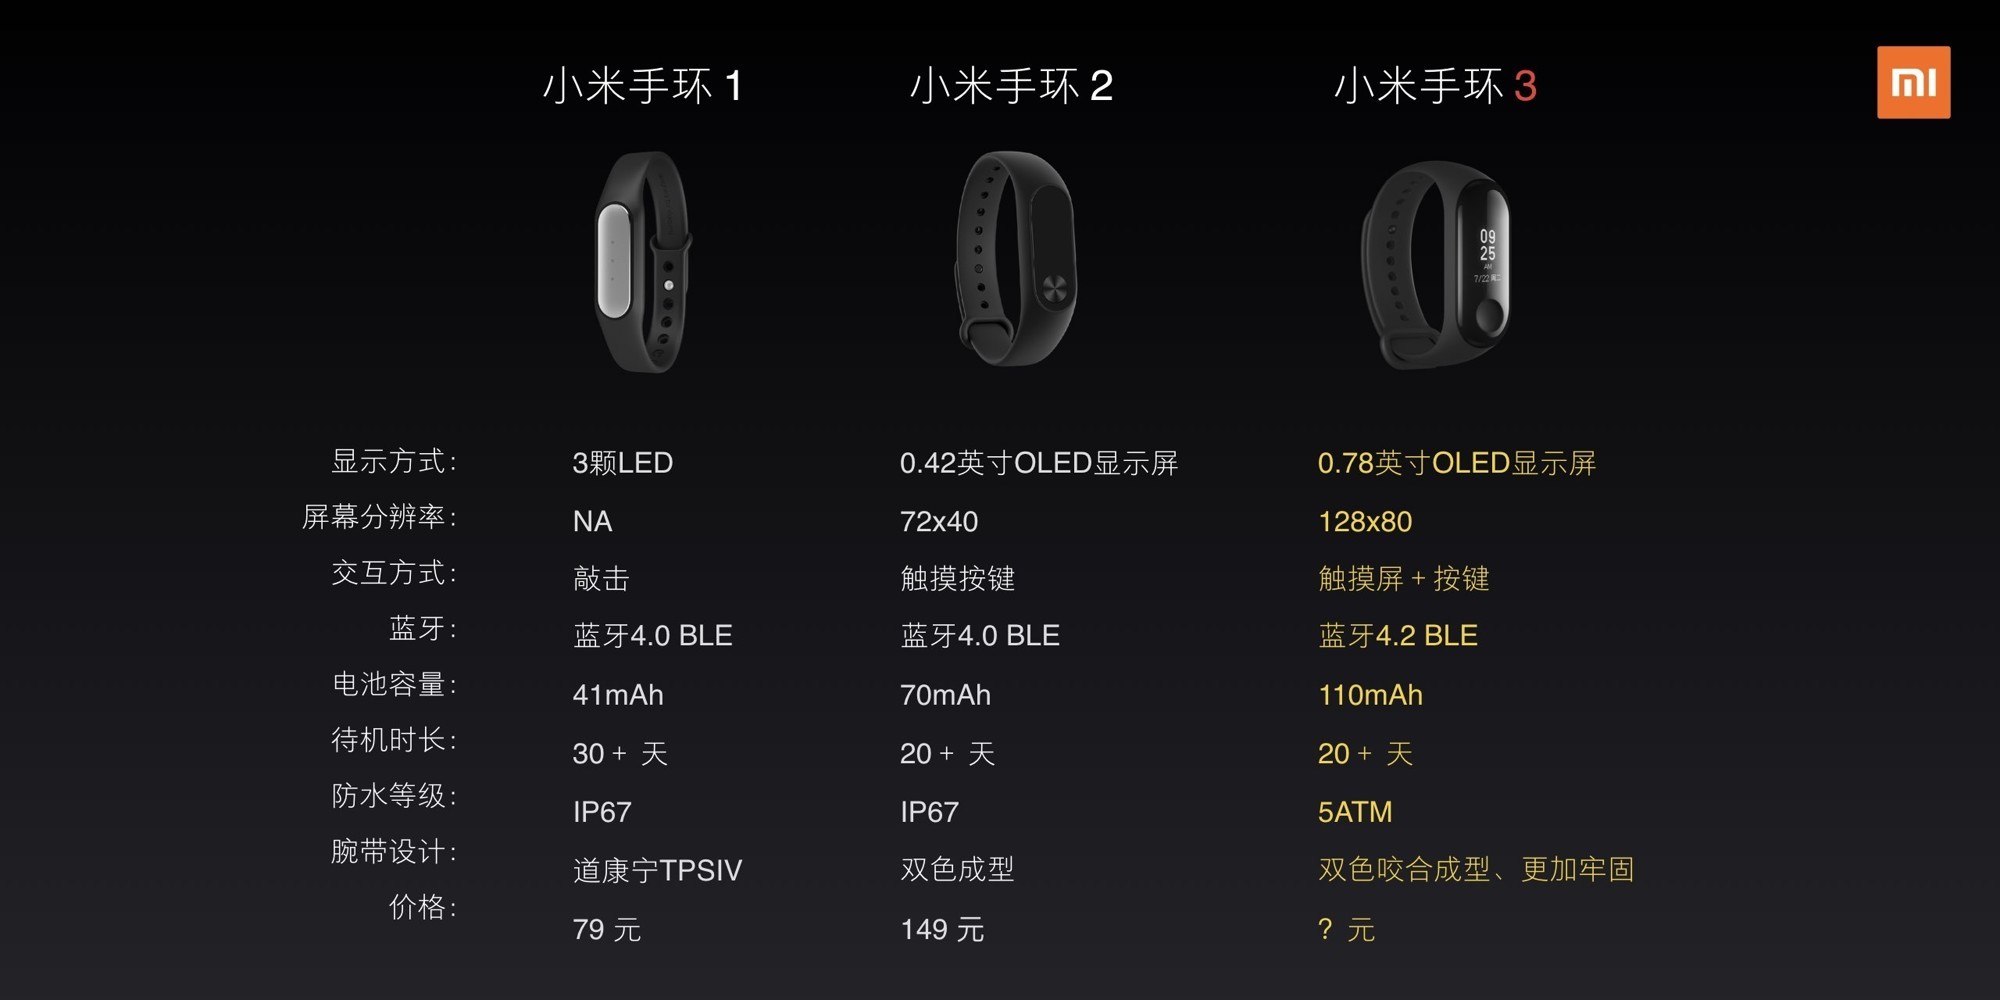 Новый фитнес-браслет Xiaomi Mi Band 3 с NFC представлен официально